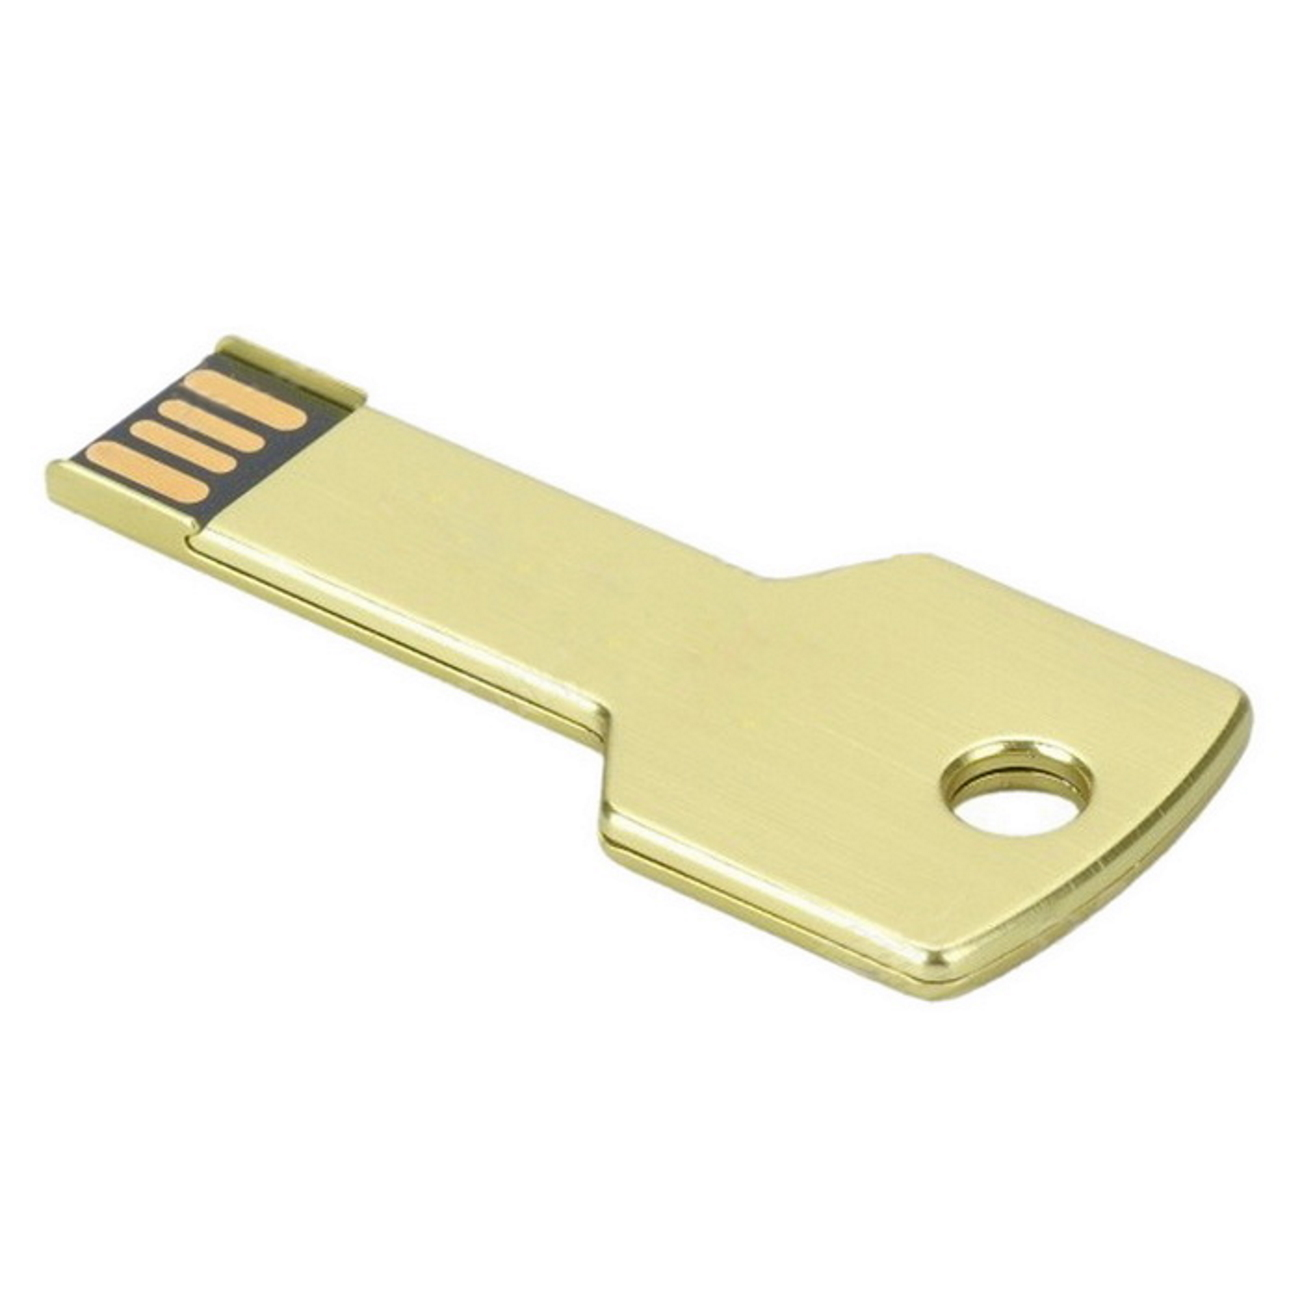 16 Key USB-Stick (Gold, USB Gold 16GB GB) GERMANY